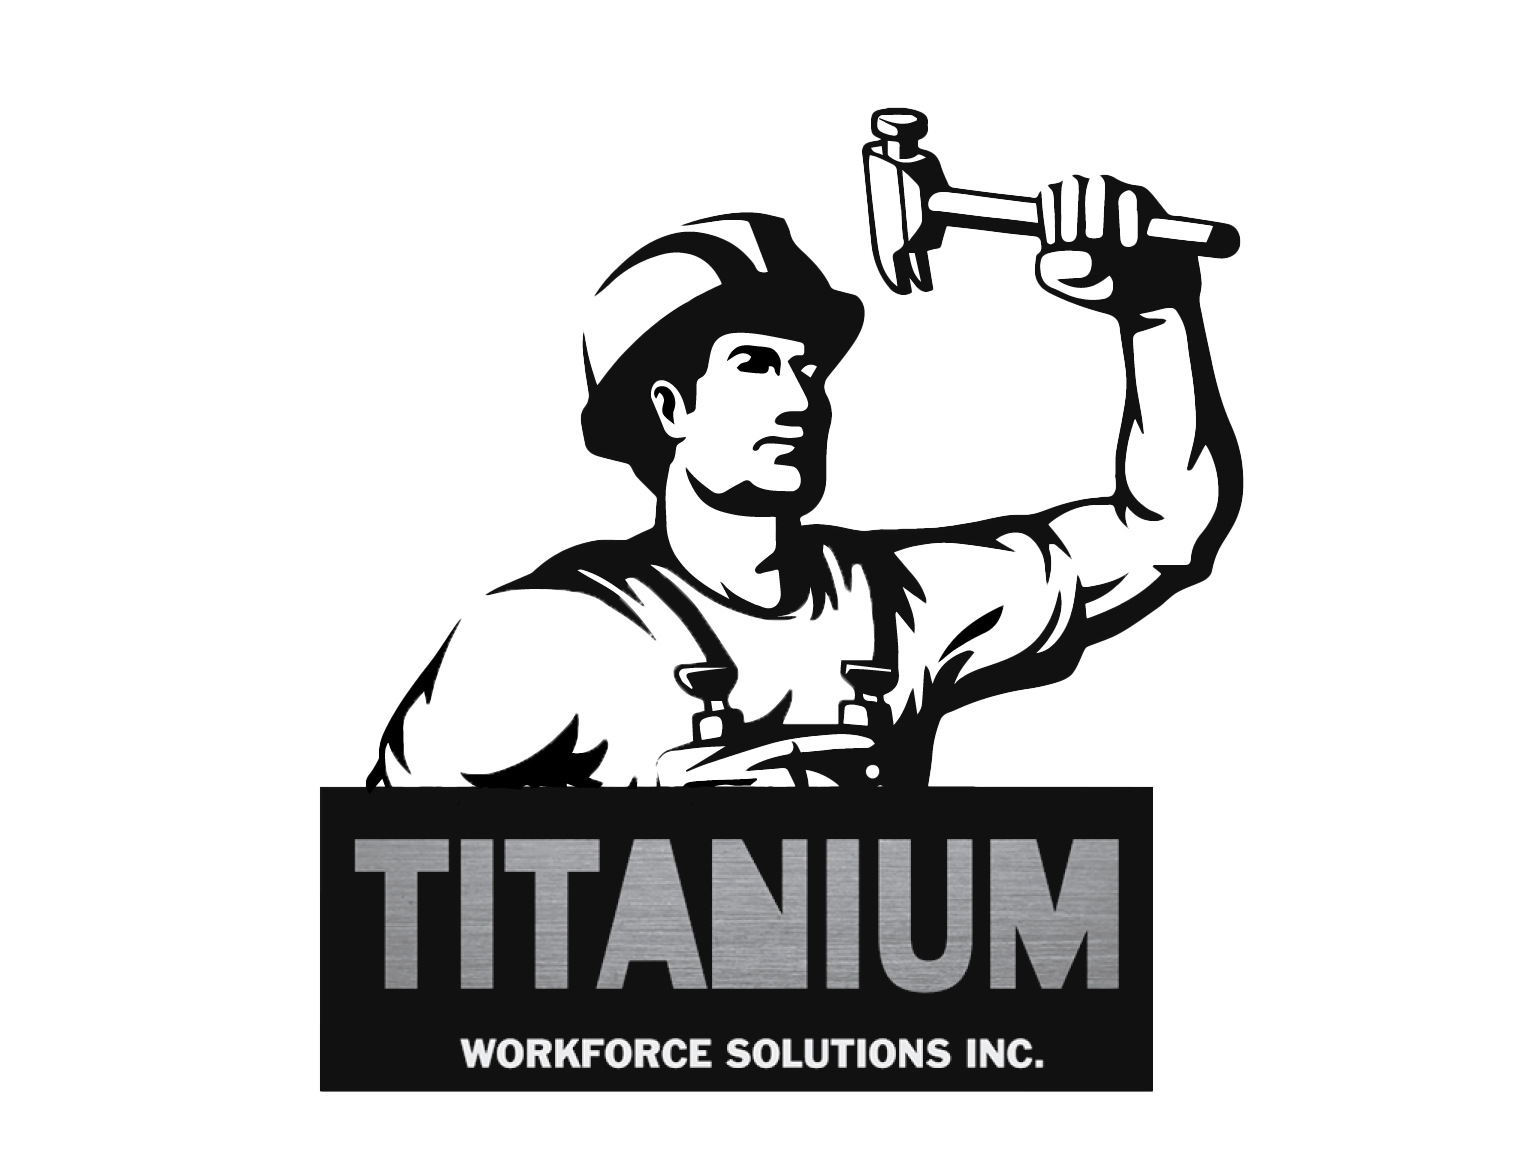 Titanium Workforce Solutions Inc